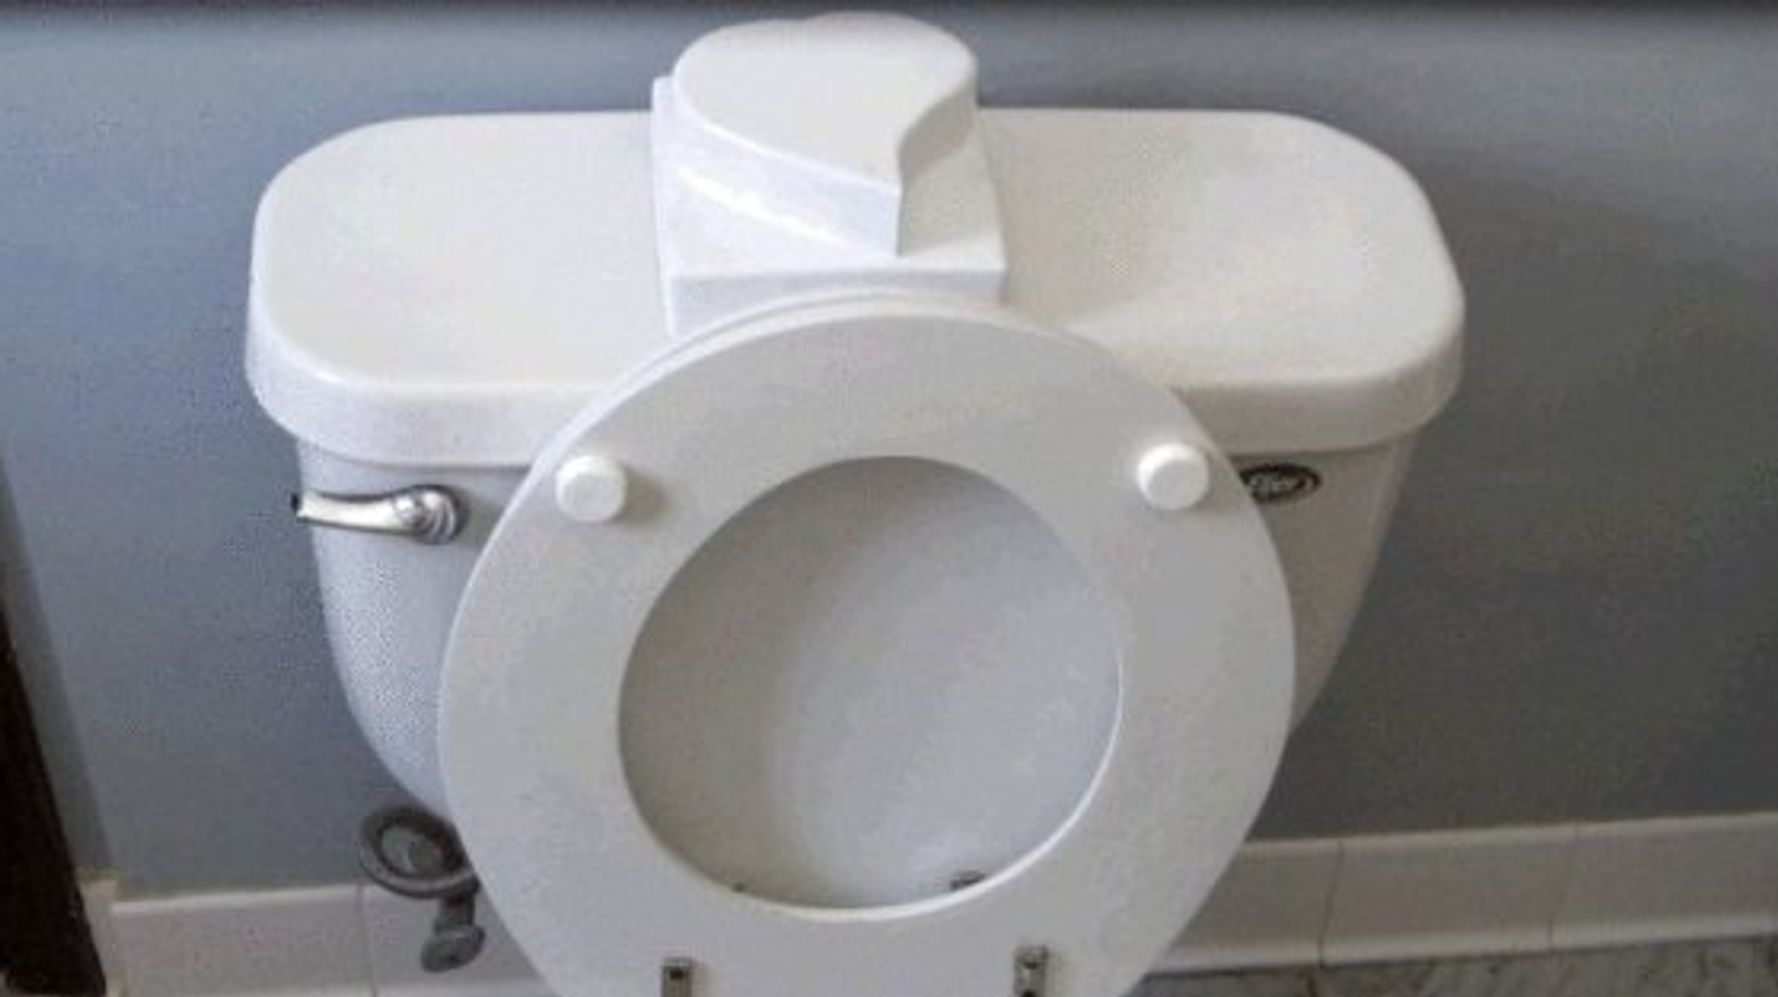 Pourquoi faut-il absolument baisser la lunette des toilettes ? : Femme  Actuelle Le MAG